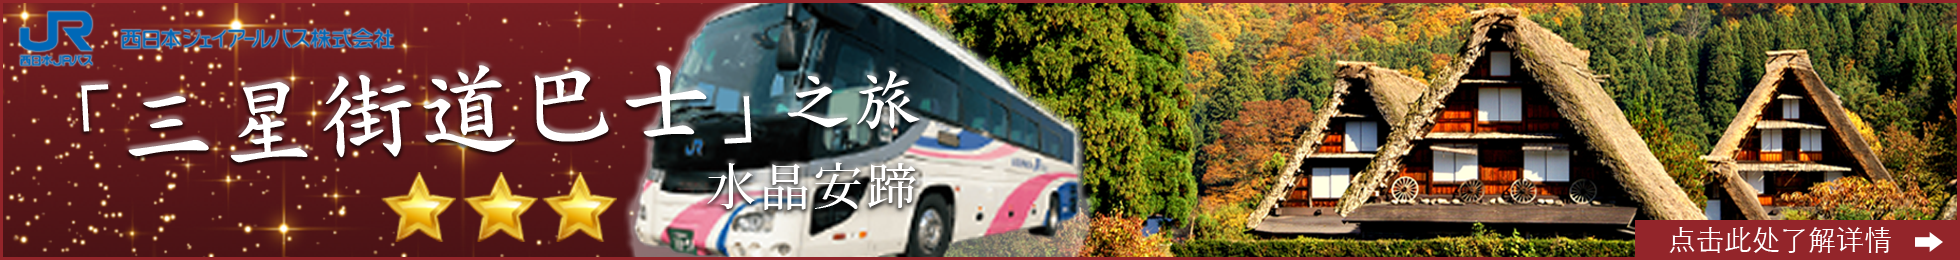 西日本JR巴士旅行 三星街道 世界遺產五箇山白川鄉合掌村高山一日遊